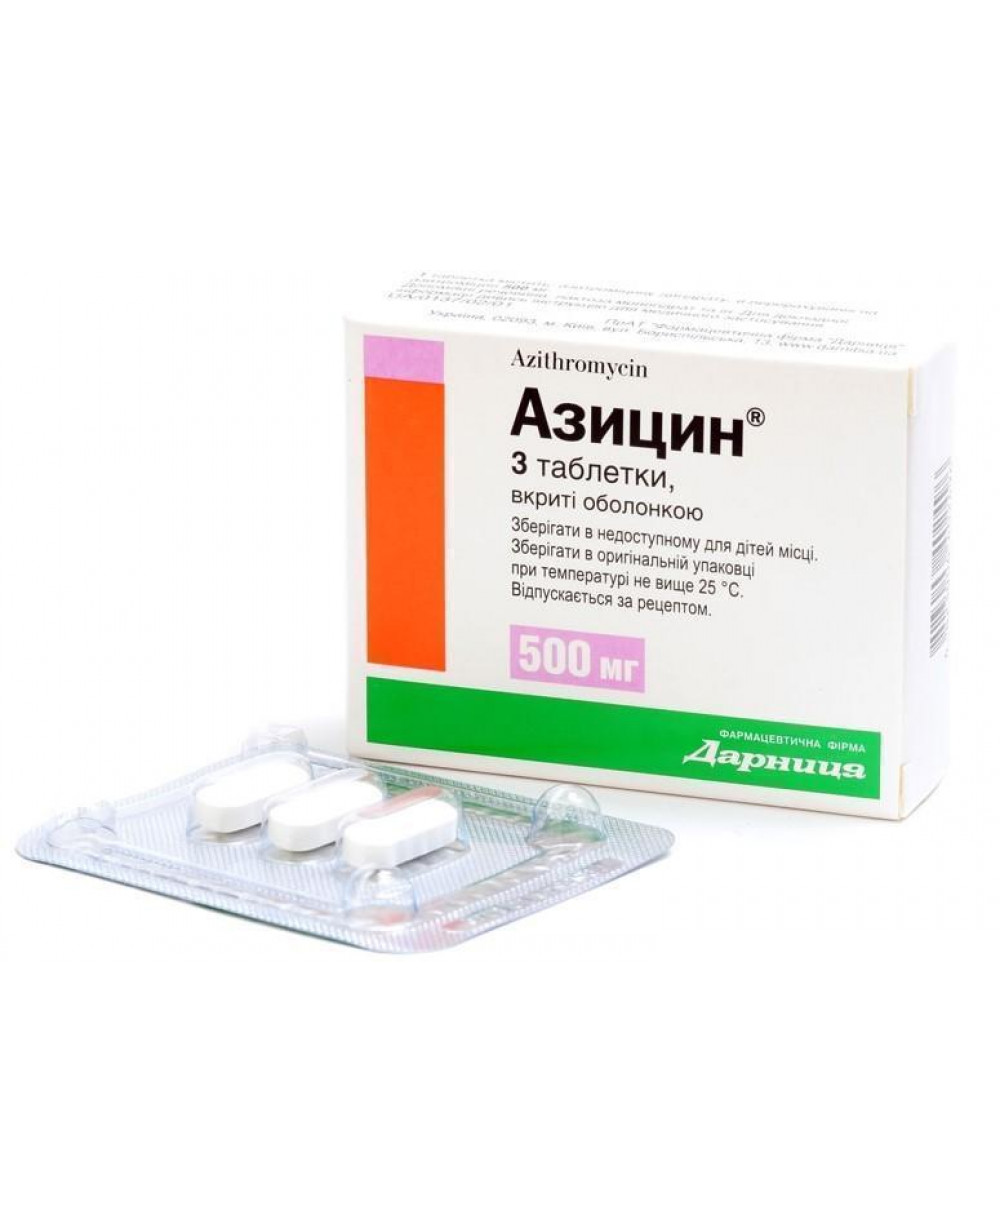 923 АЗИЦИН® - Azithromycin